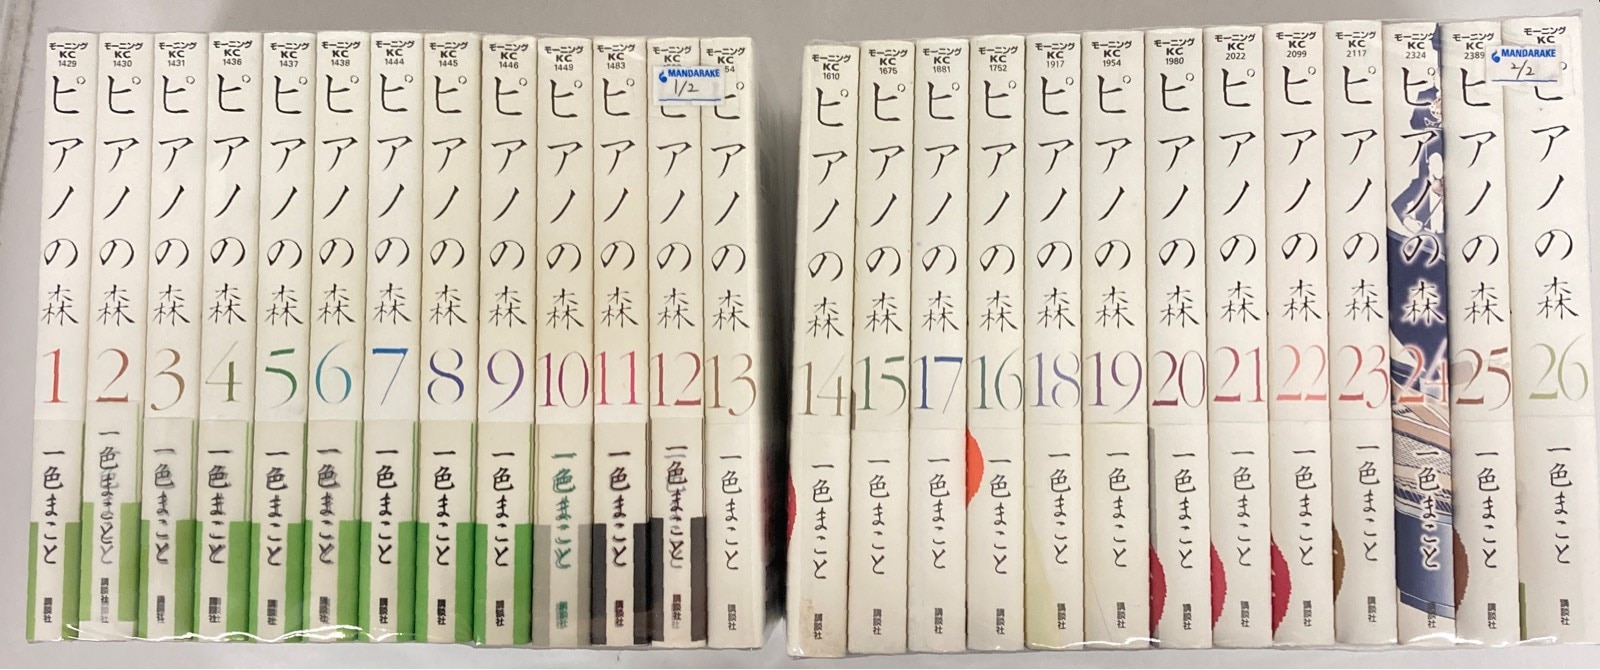 講談社 モーニングKC 一色まこと !!)☆ピアノの森 新装版 全26巻 セット